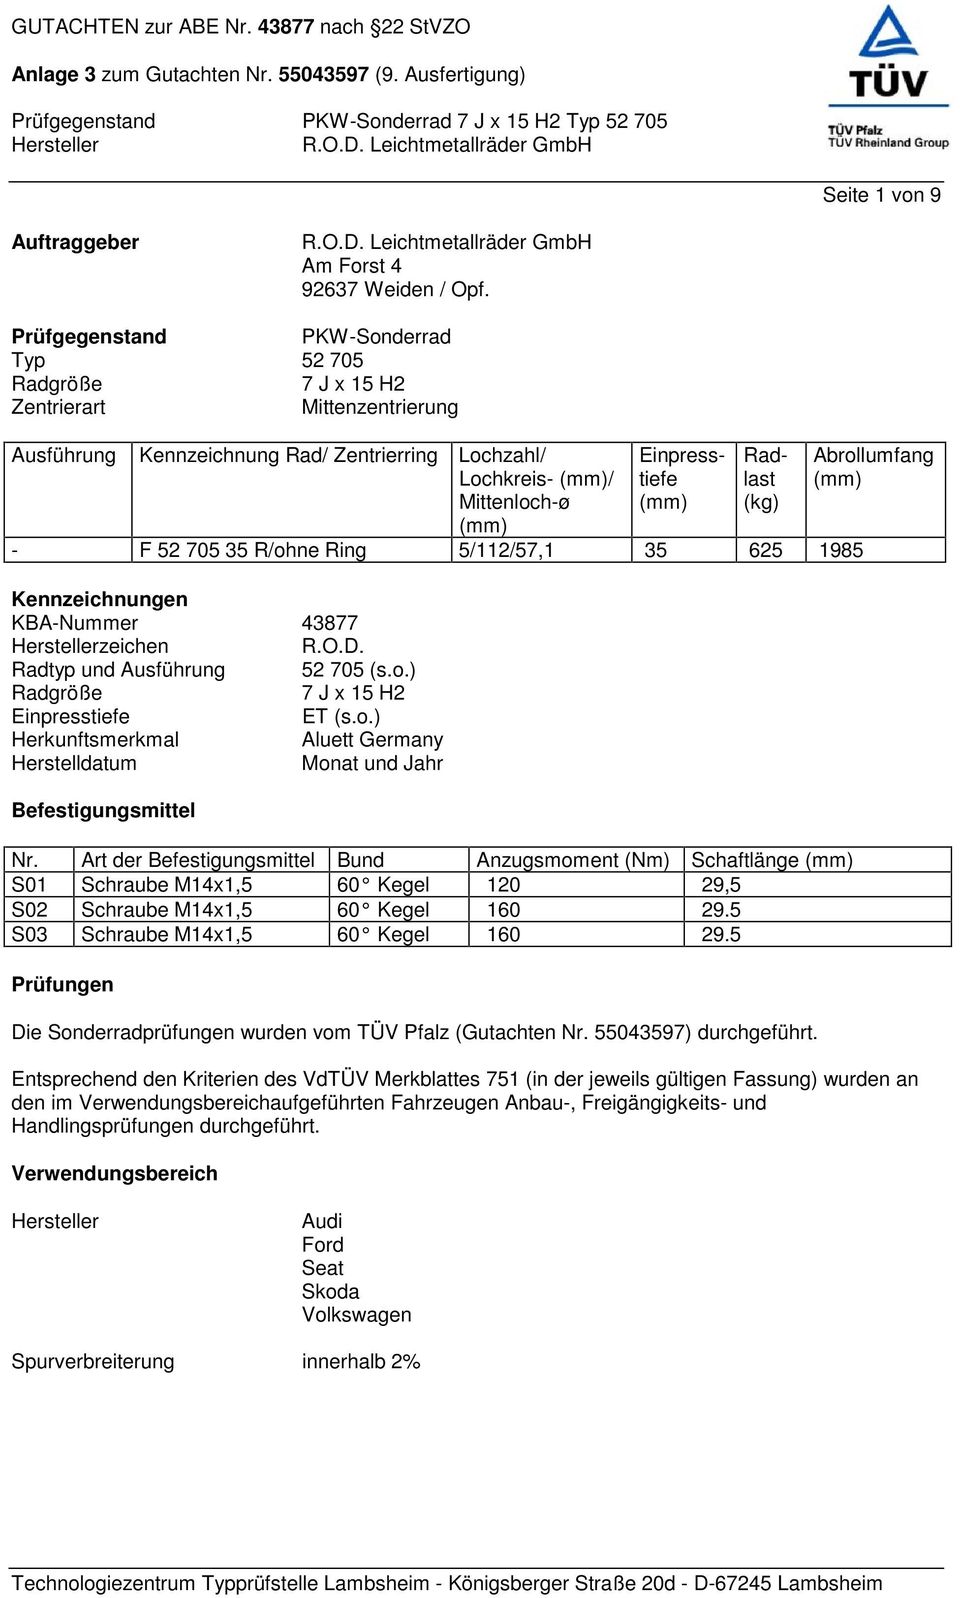 Radlast (kg) - F 52 705 35 R/ohne Ring 5/112/57,1 35 625 1985 Kennzeichnungen KBA-Nummer 43877 zeichen R.O.D. Radtyp und Ausführung 52 705 (s.o.) Radgröße 7 J x 15 H2 Einpresstiefe ET (s.o.) Herkunftsmerkmal Aluett Germany Herstelldatum Monat und Jahr Befestigungsmittel Nr.